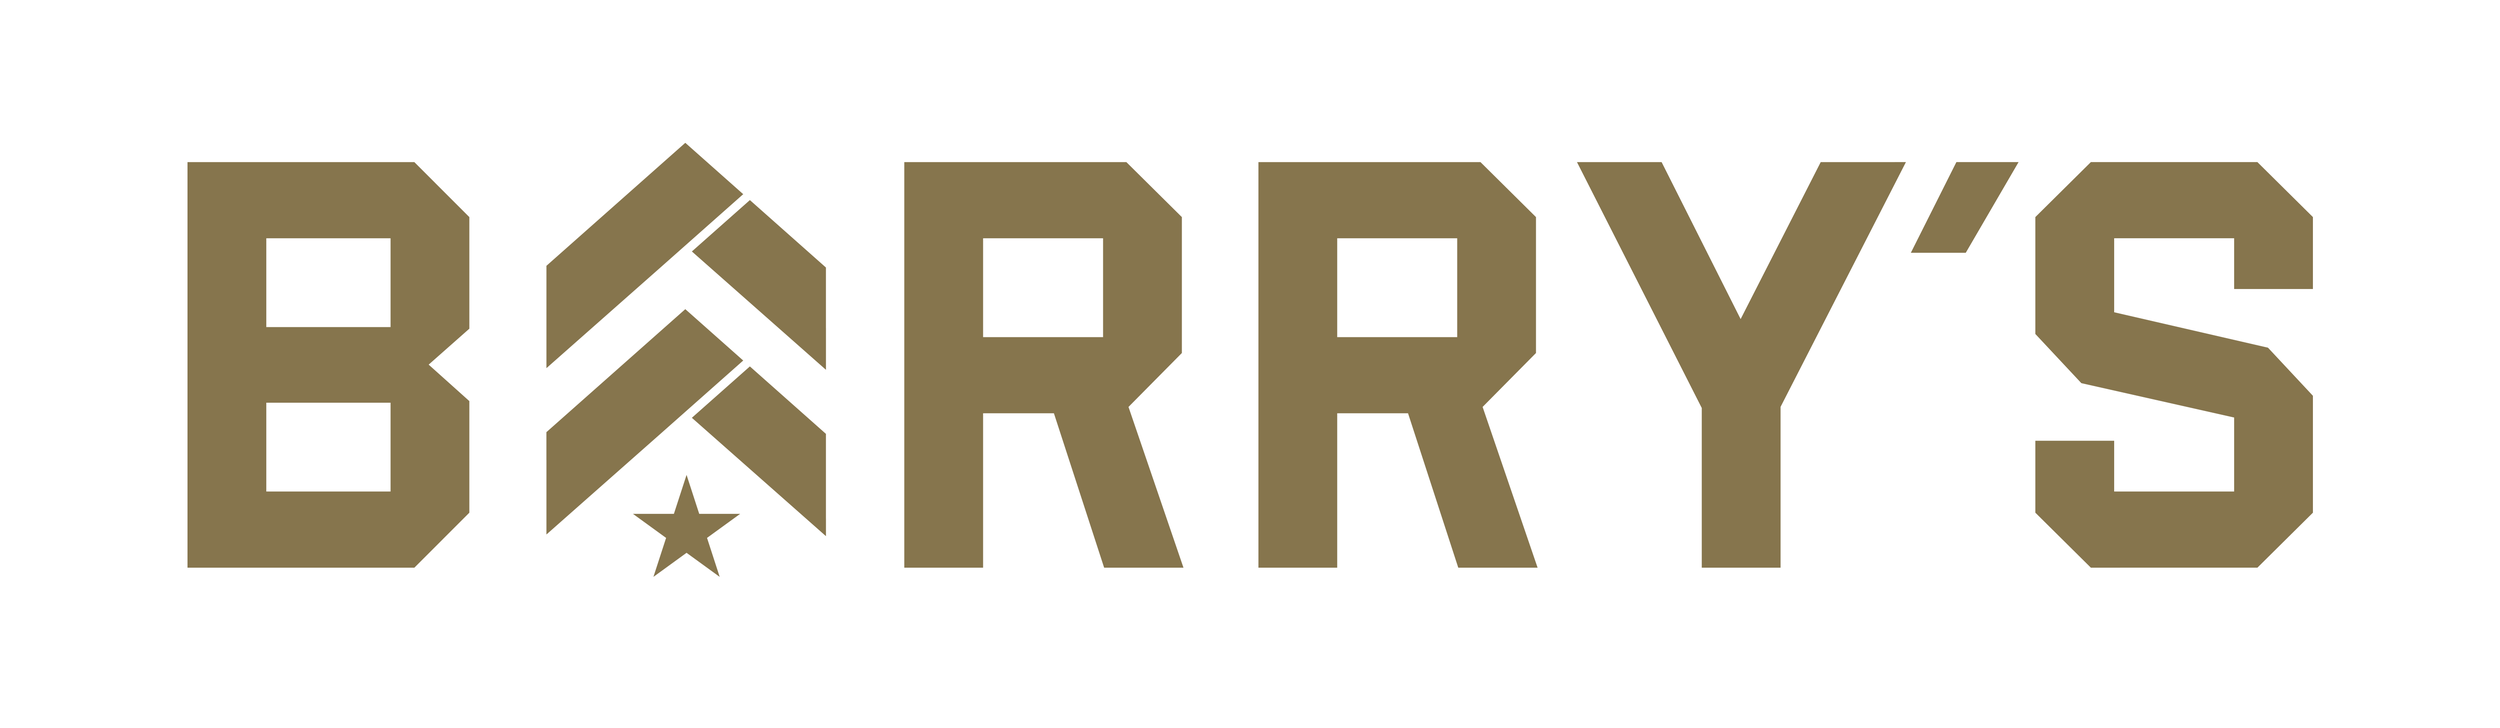 Barrys_Logo.png